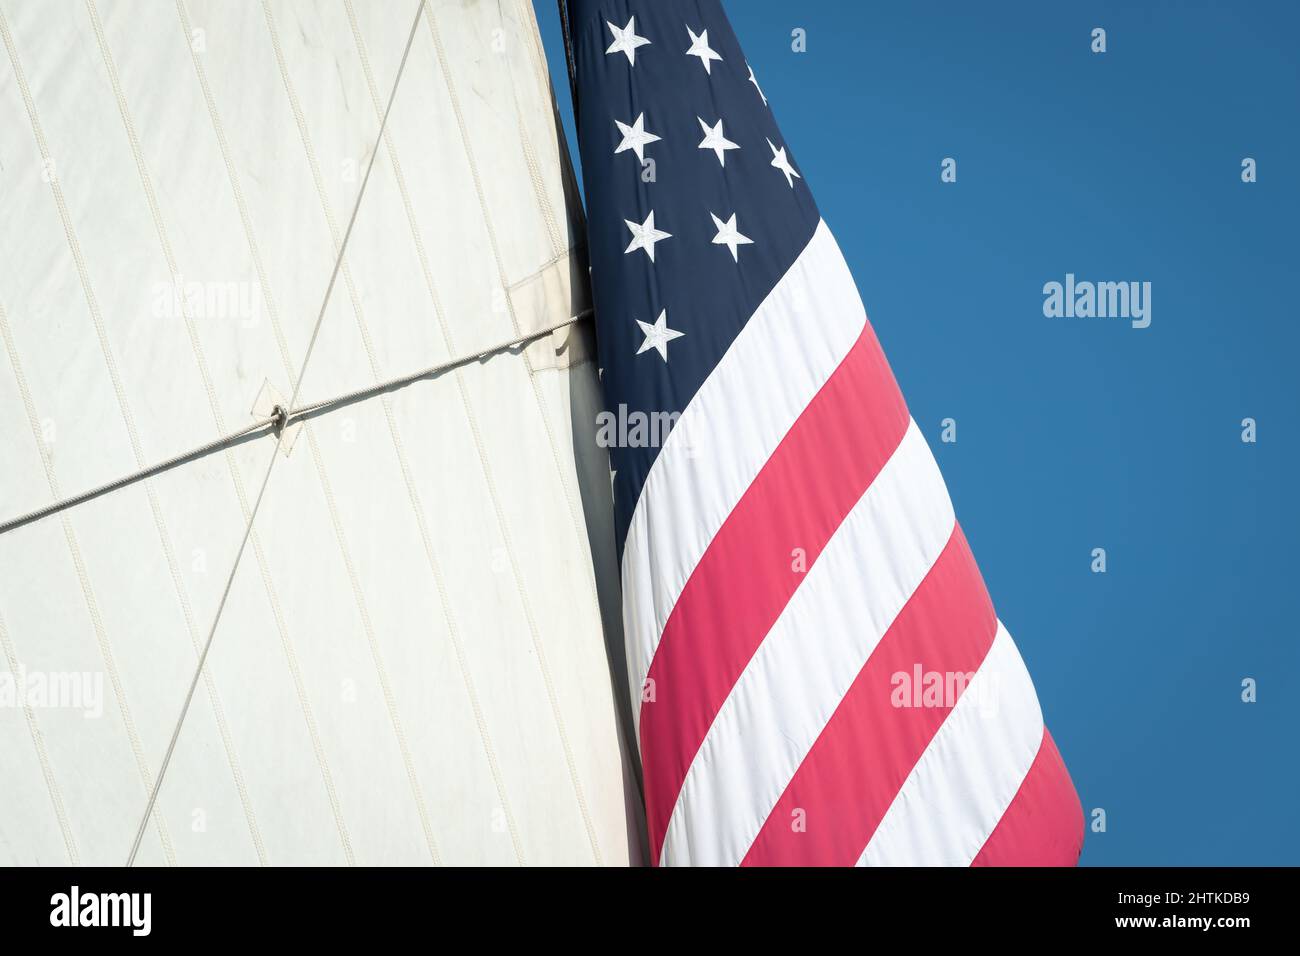 Große amerikanische Flagge hängt neben dem Mizzensegel auf einem amerikanischen Hochschiff. Stockfoto